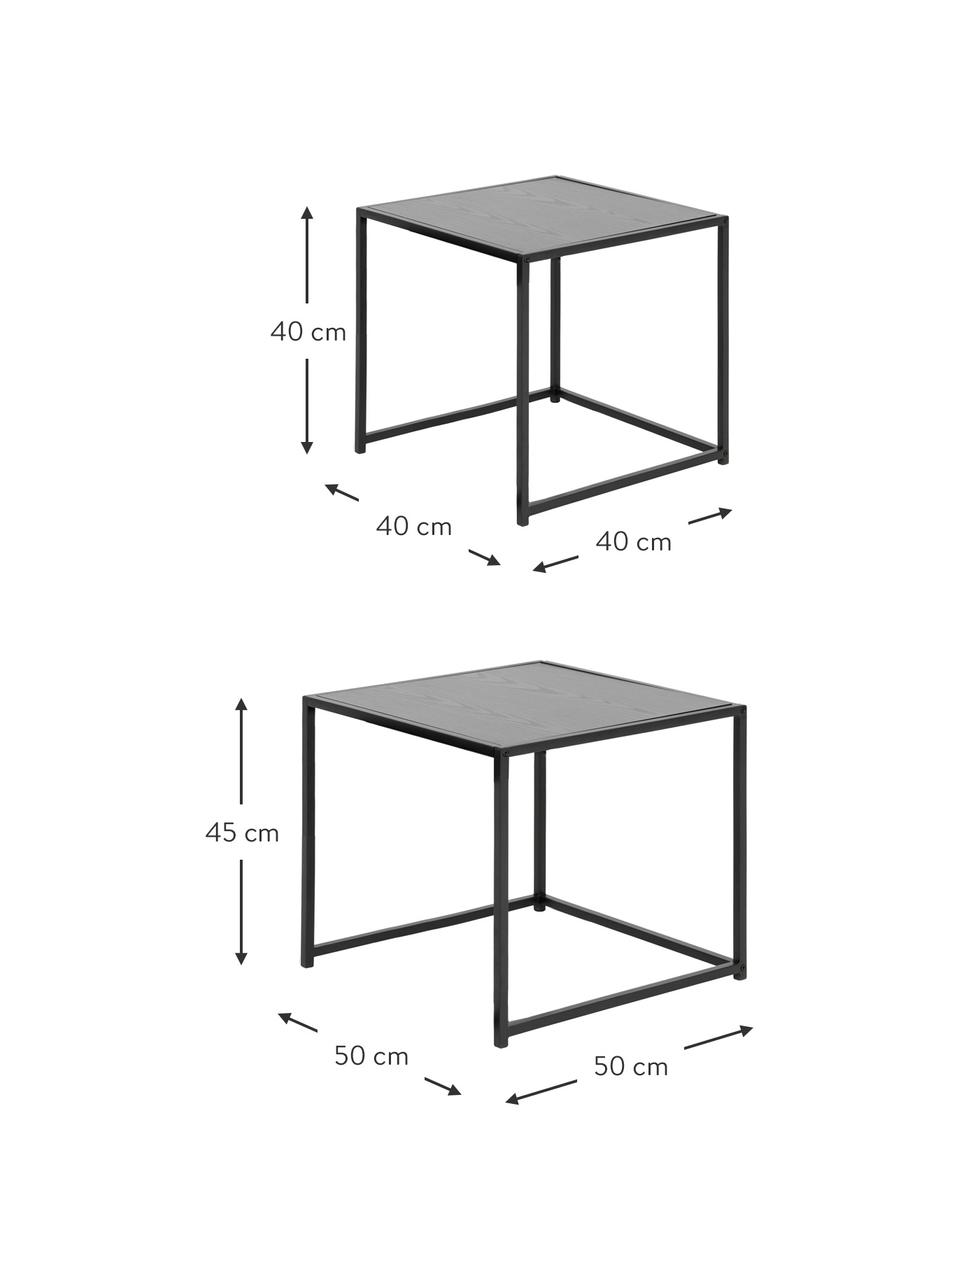 Tables gigognes noires Seaford, 2 élém., MDF (panneau en fibres de bois à densité moyenne), métal, Bois, noir, Lot de différentes tailles